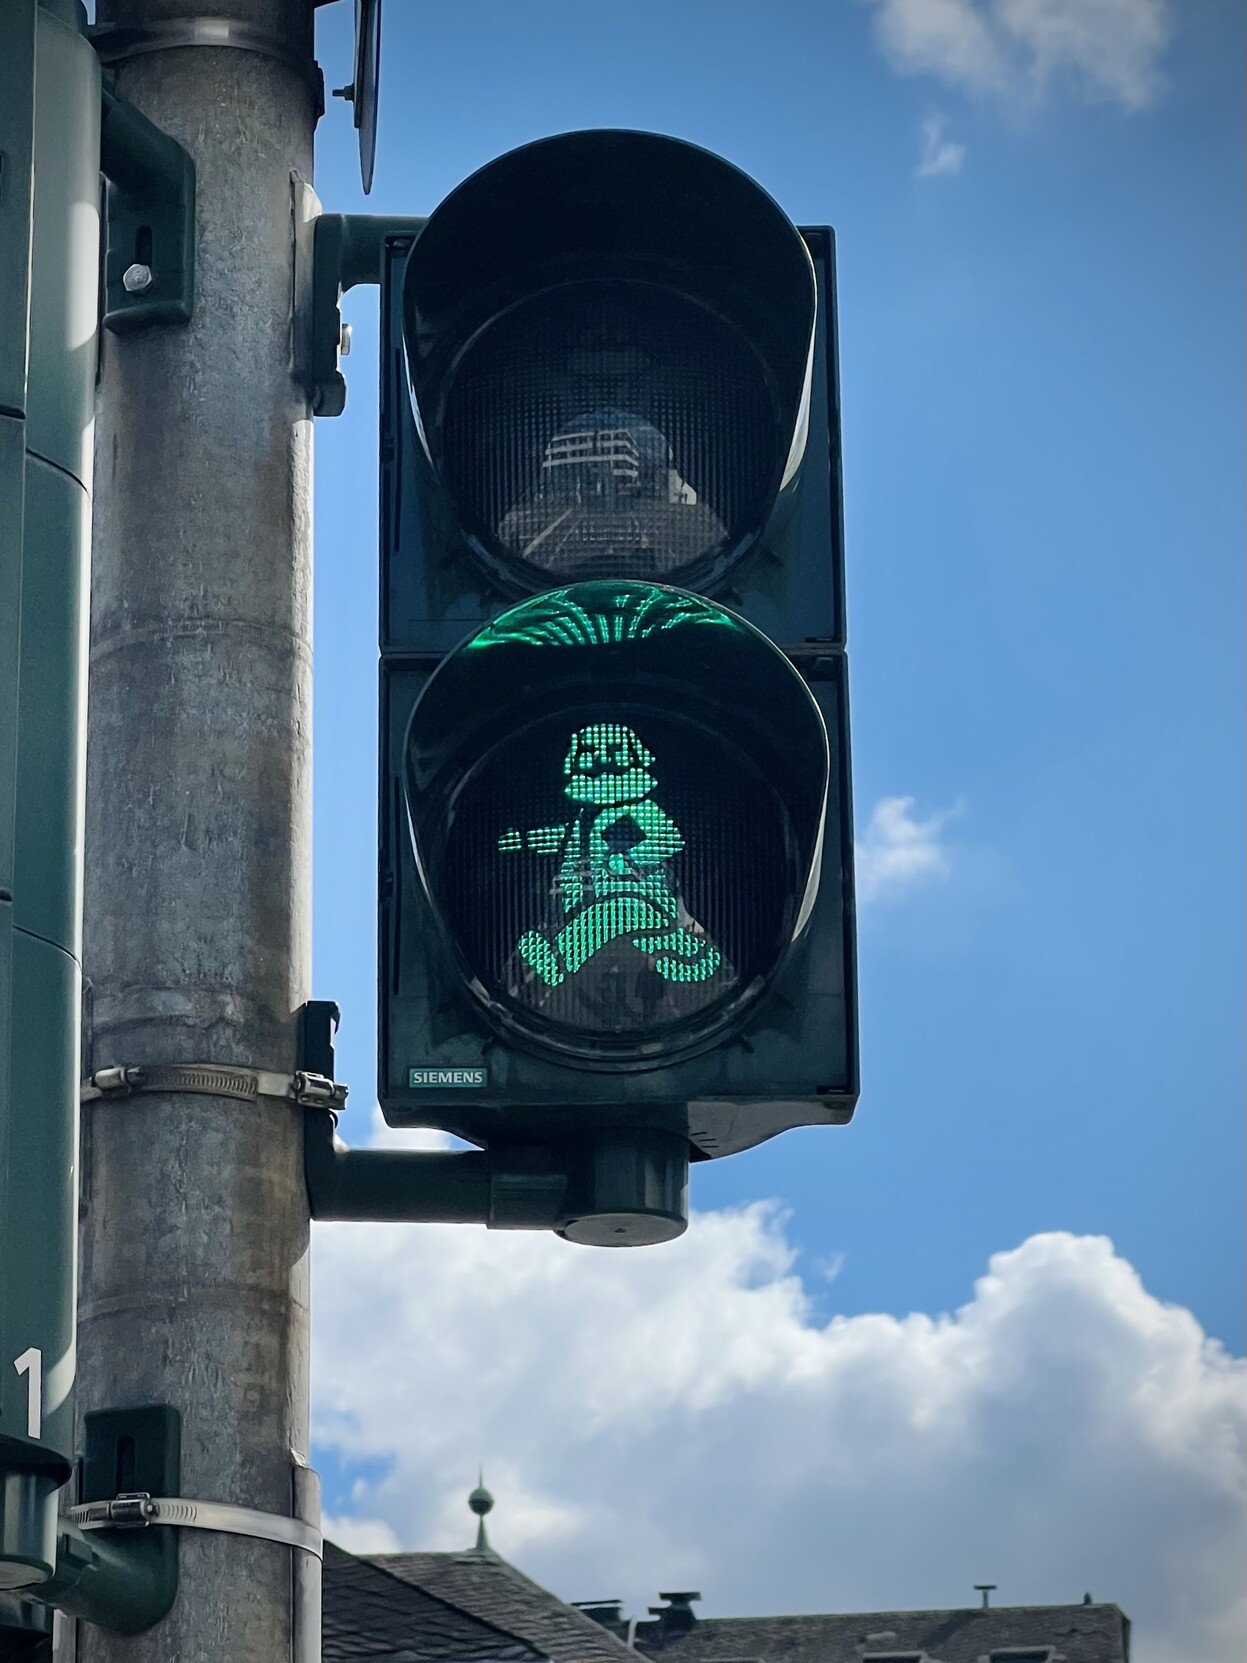 Fußgängerampel. Das grüne Ampelmännchen ist (vermutlich) Karl Marx. 